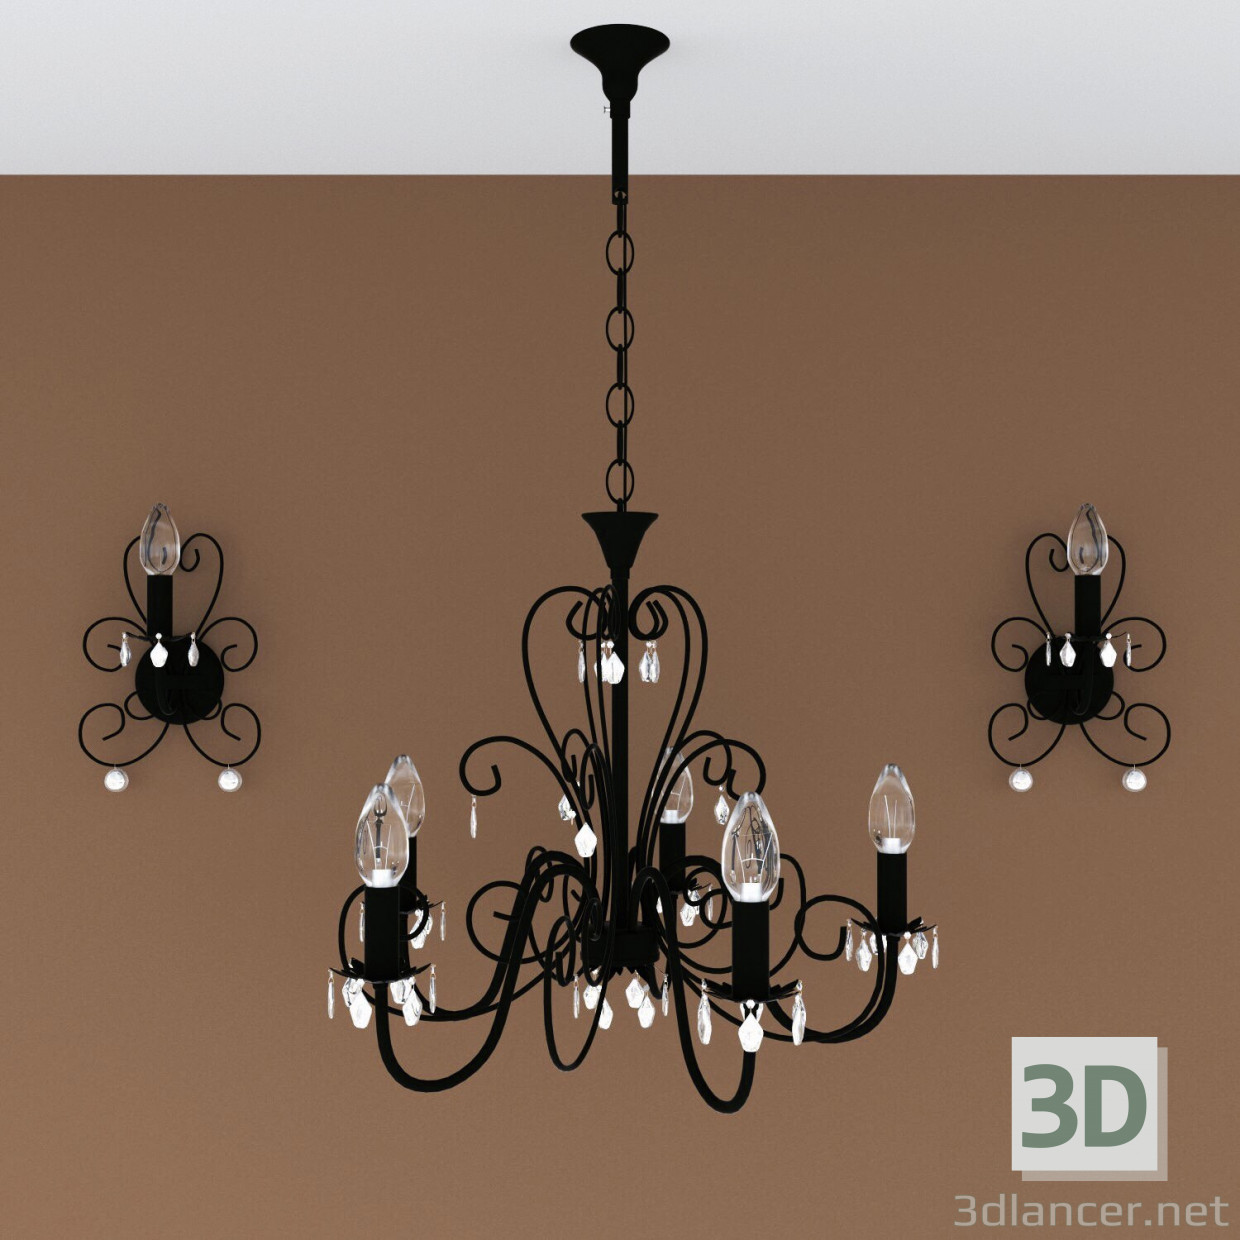 3d Chandelier + lamp model buy - render